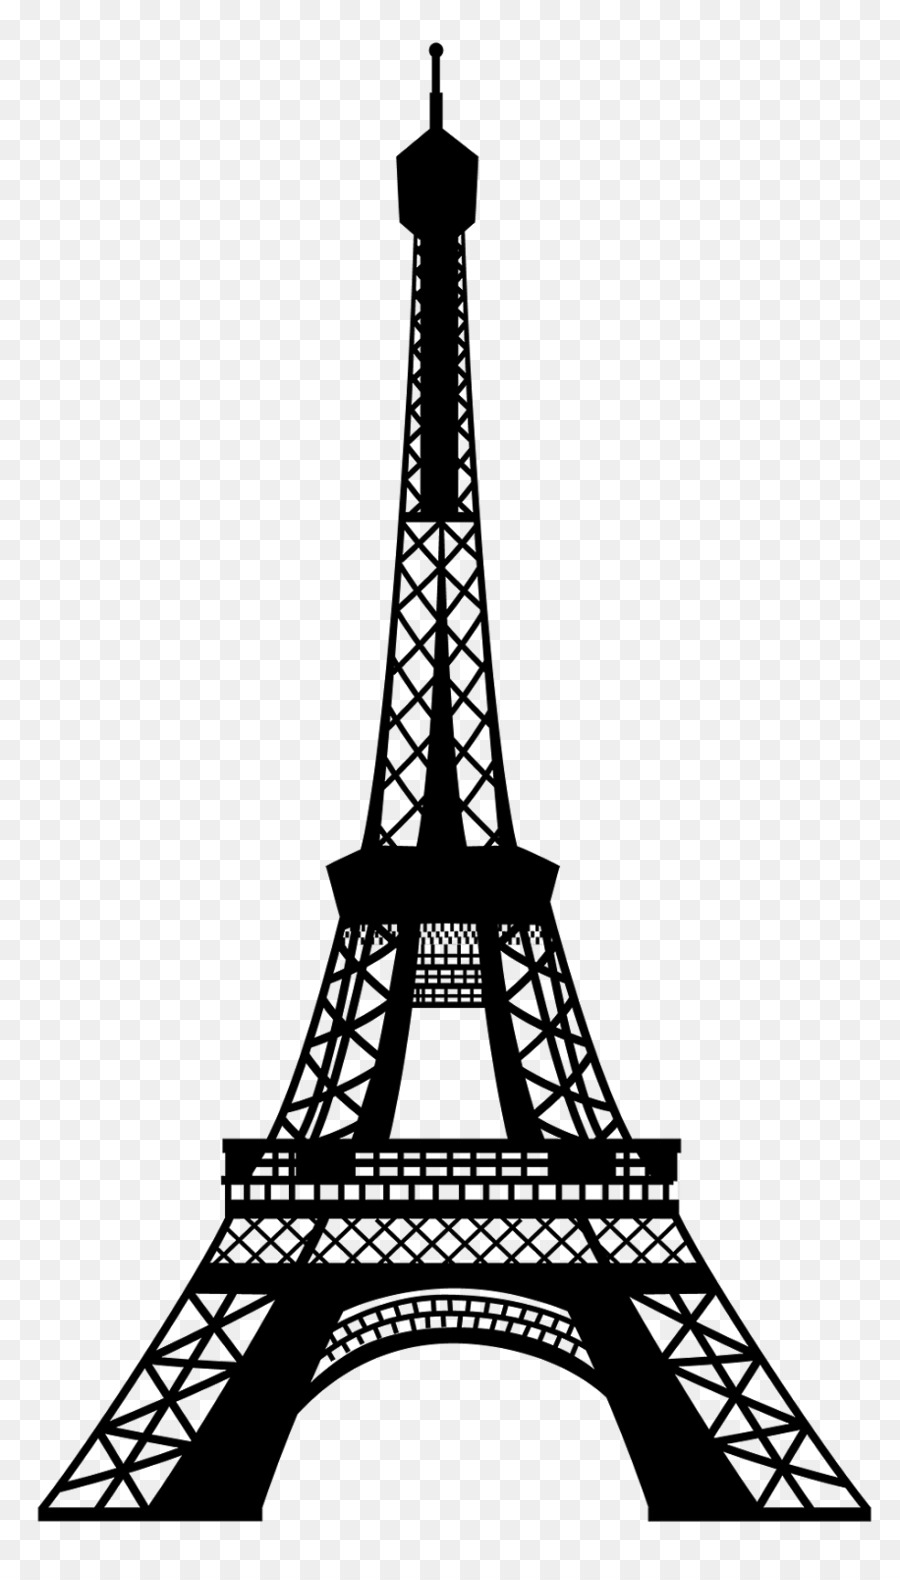 Eiffel Tower Clip art - Paris png download - 916*1600 - Free Transparent Eiffel Tower png Download.